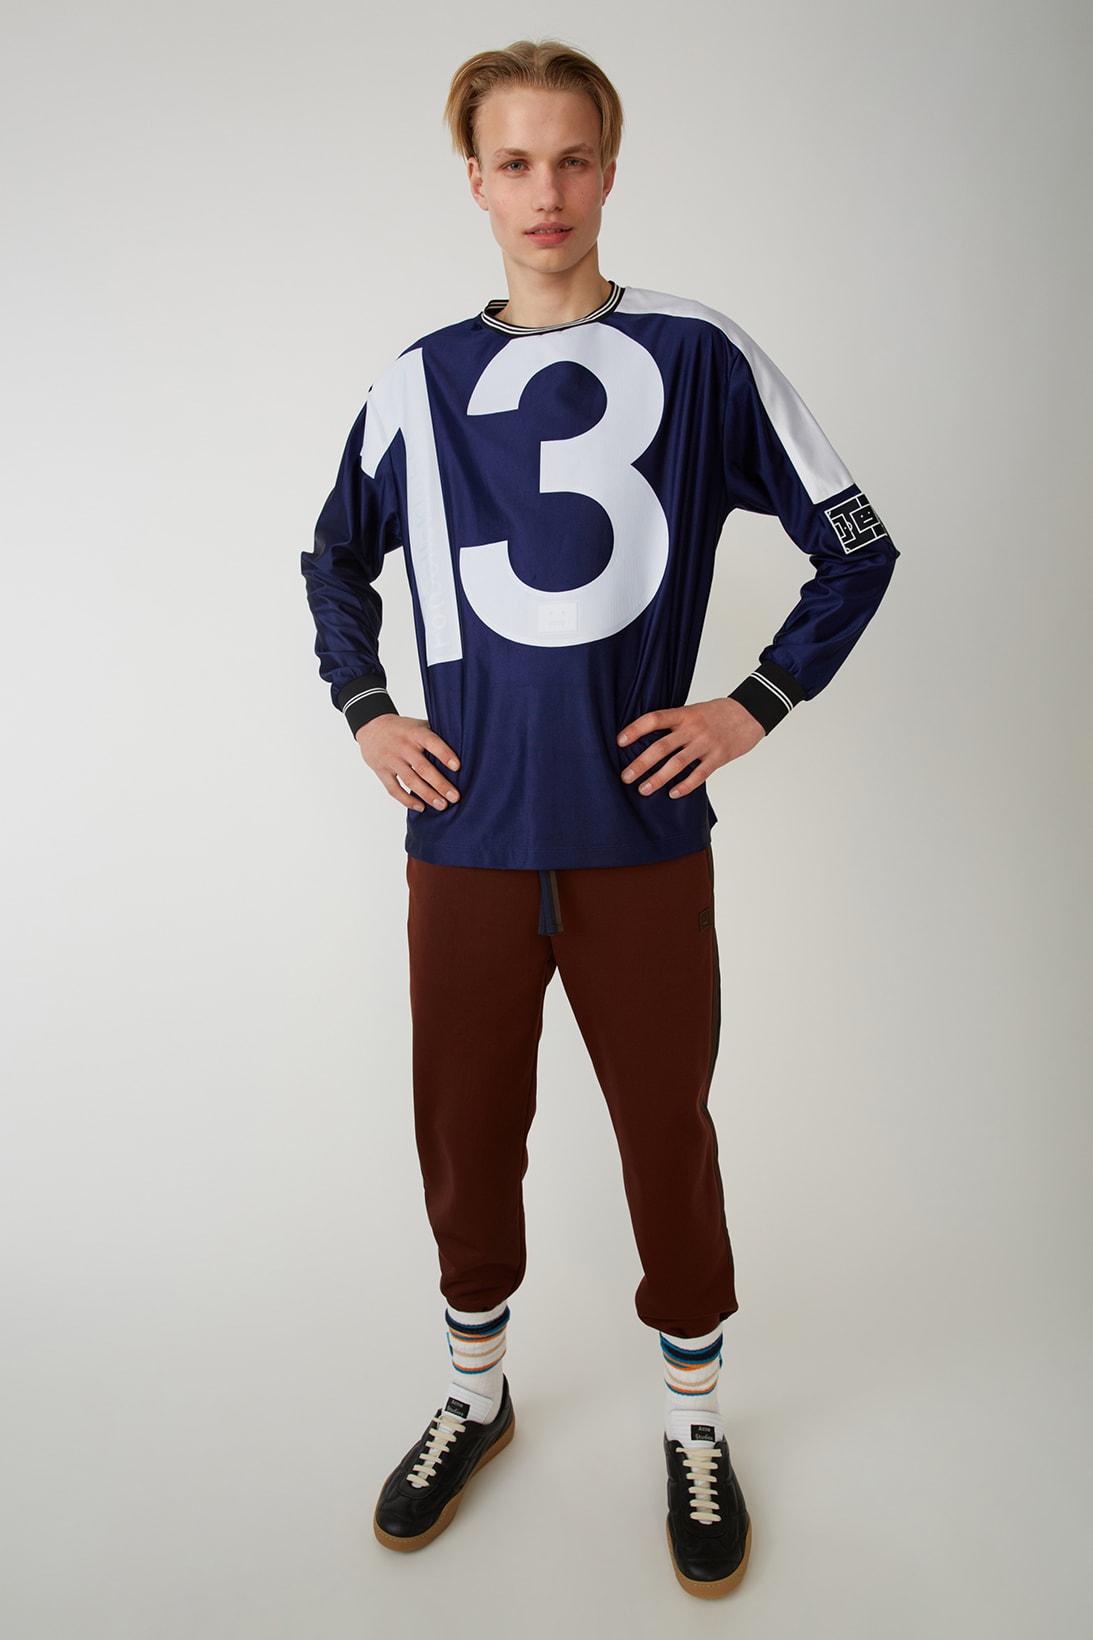 Acne Studios Fotbollsklubb football kit uniform jersey